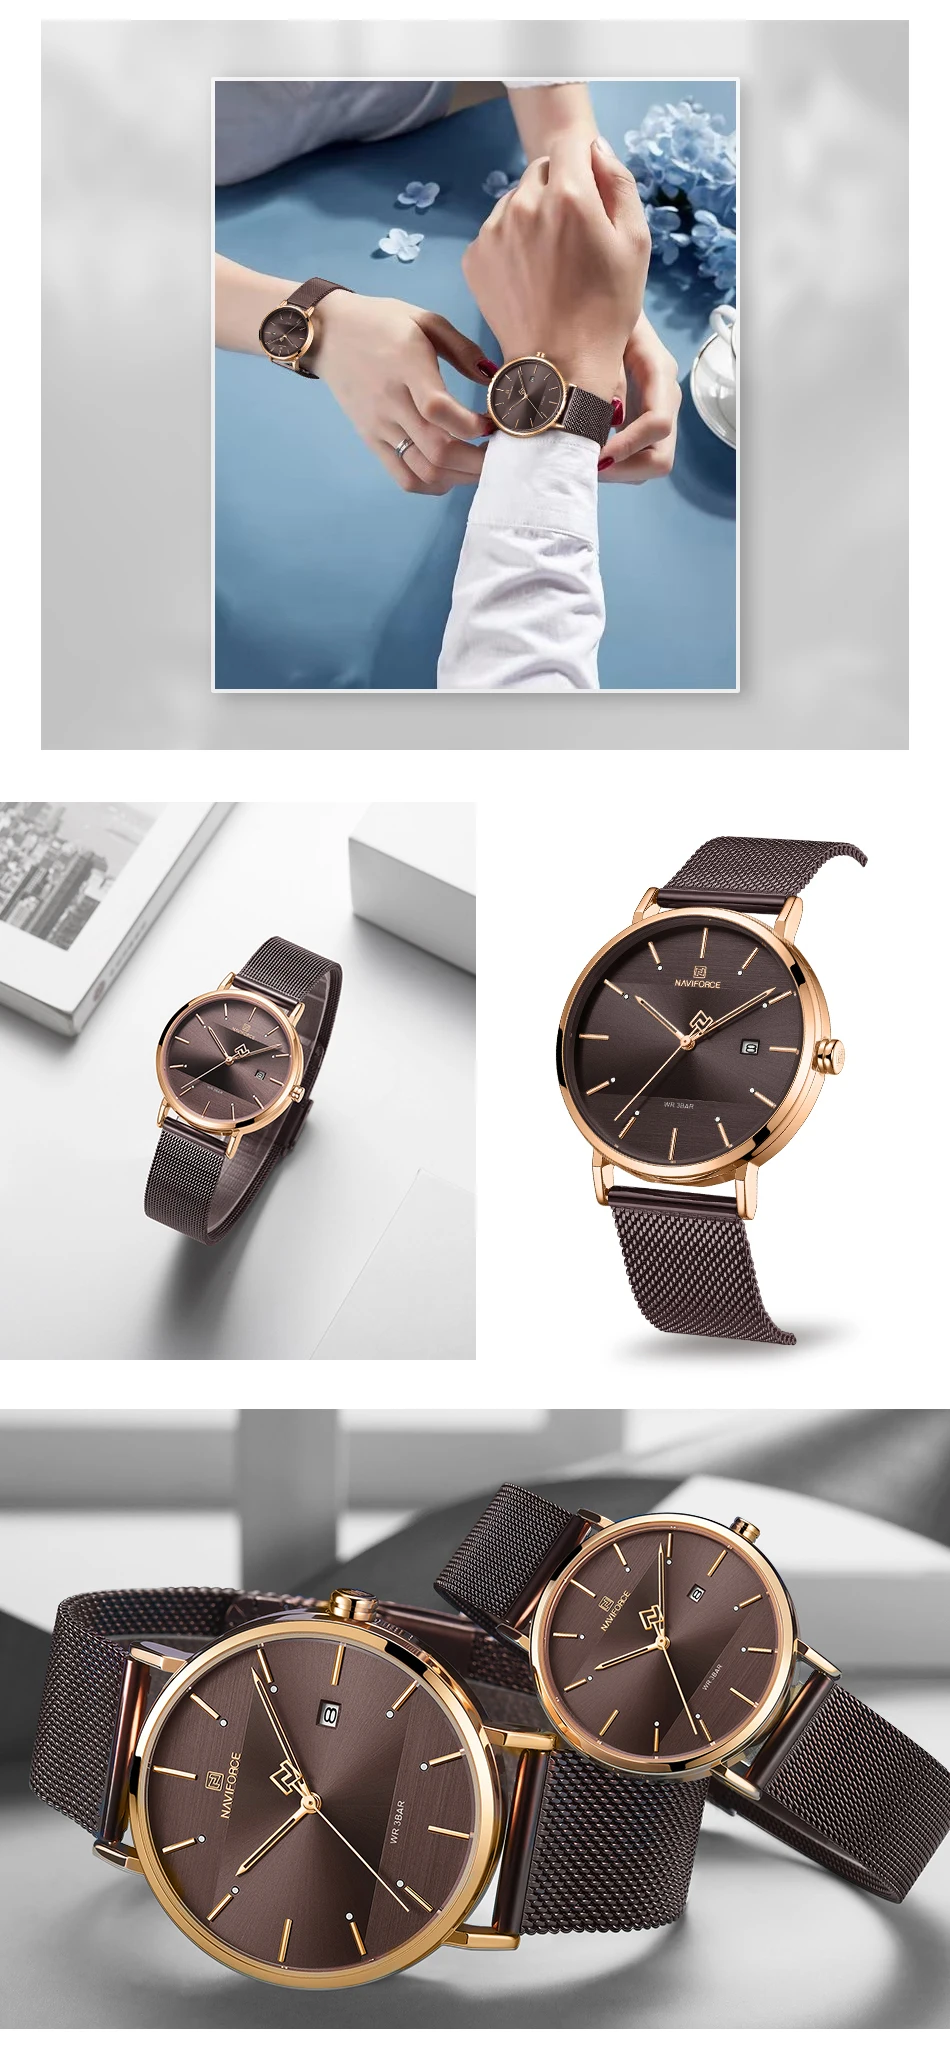 NAVIFORCE Топ люксовый бренд мужские s часы кварцевые простые мужские женские комплект часы водонепроницаемые мужские наручные часы для пары Relogio Masculino